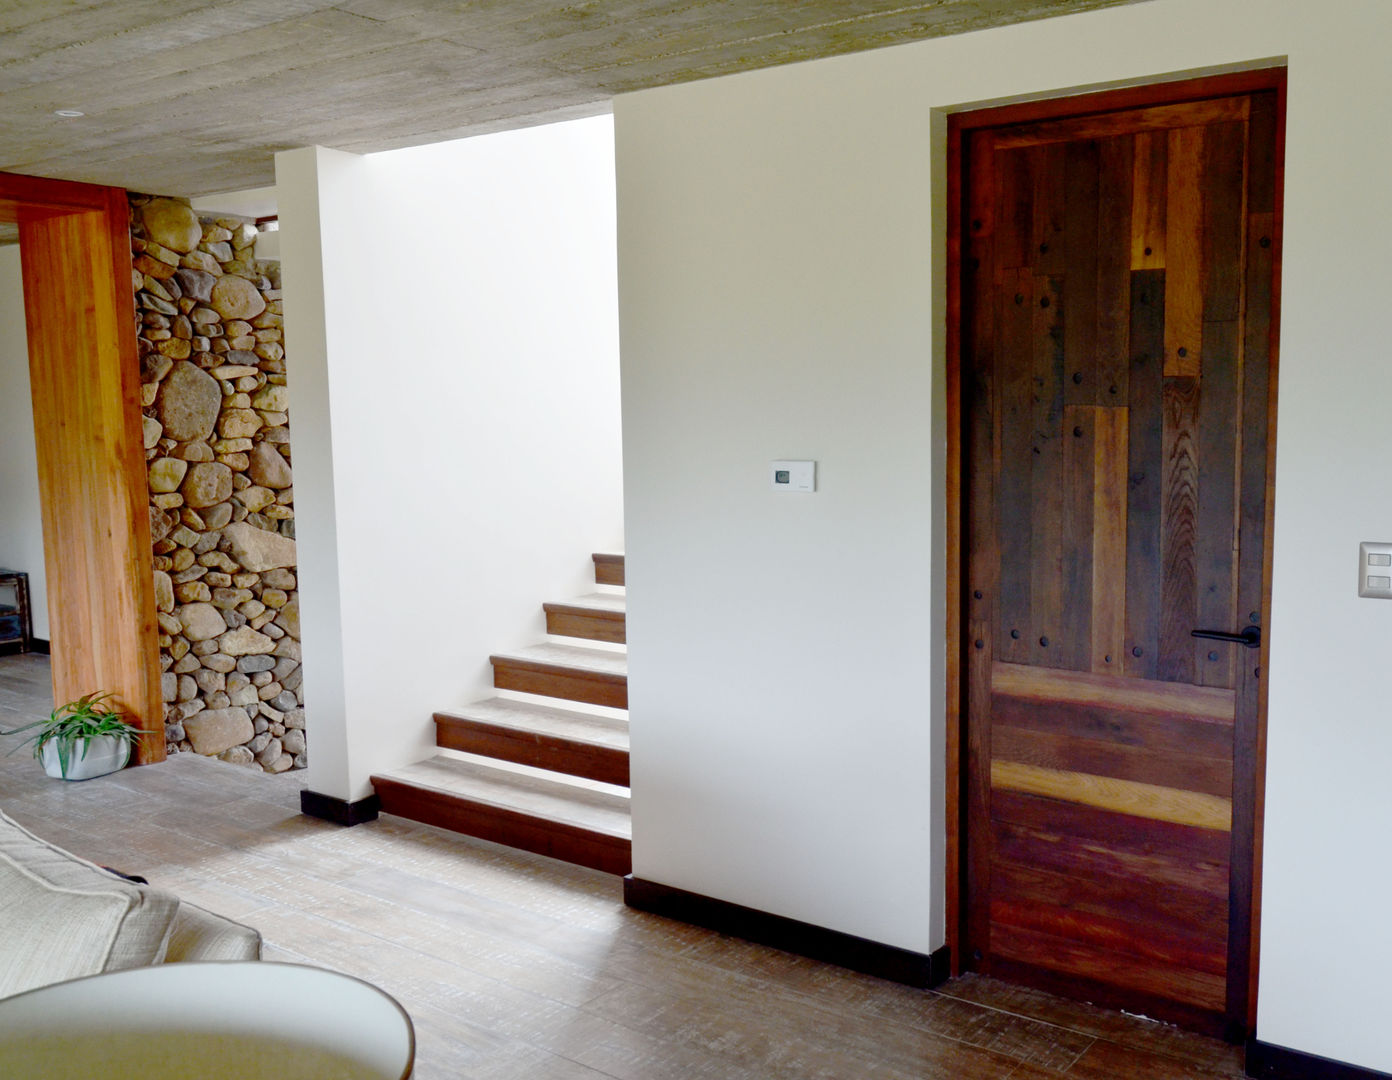 Escalera, piso y puerta interior en base a duelas. Ignisterra S.A. Puertas y ventanas de estilo rústico Madera Acabado en madera